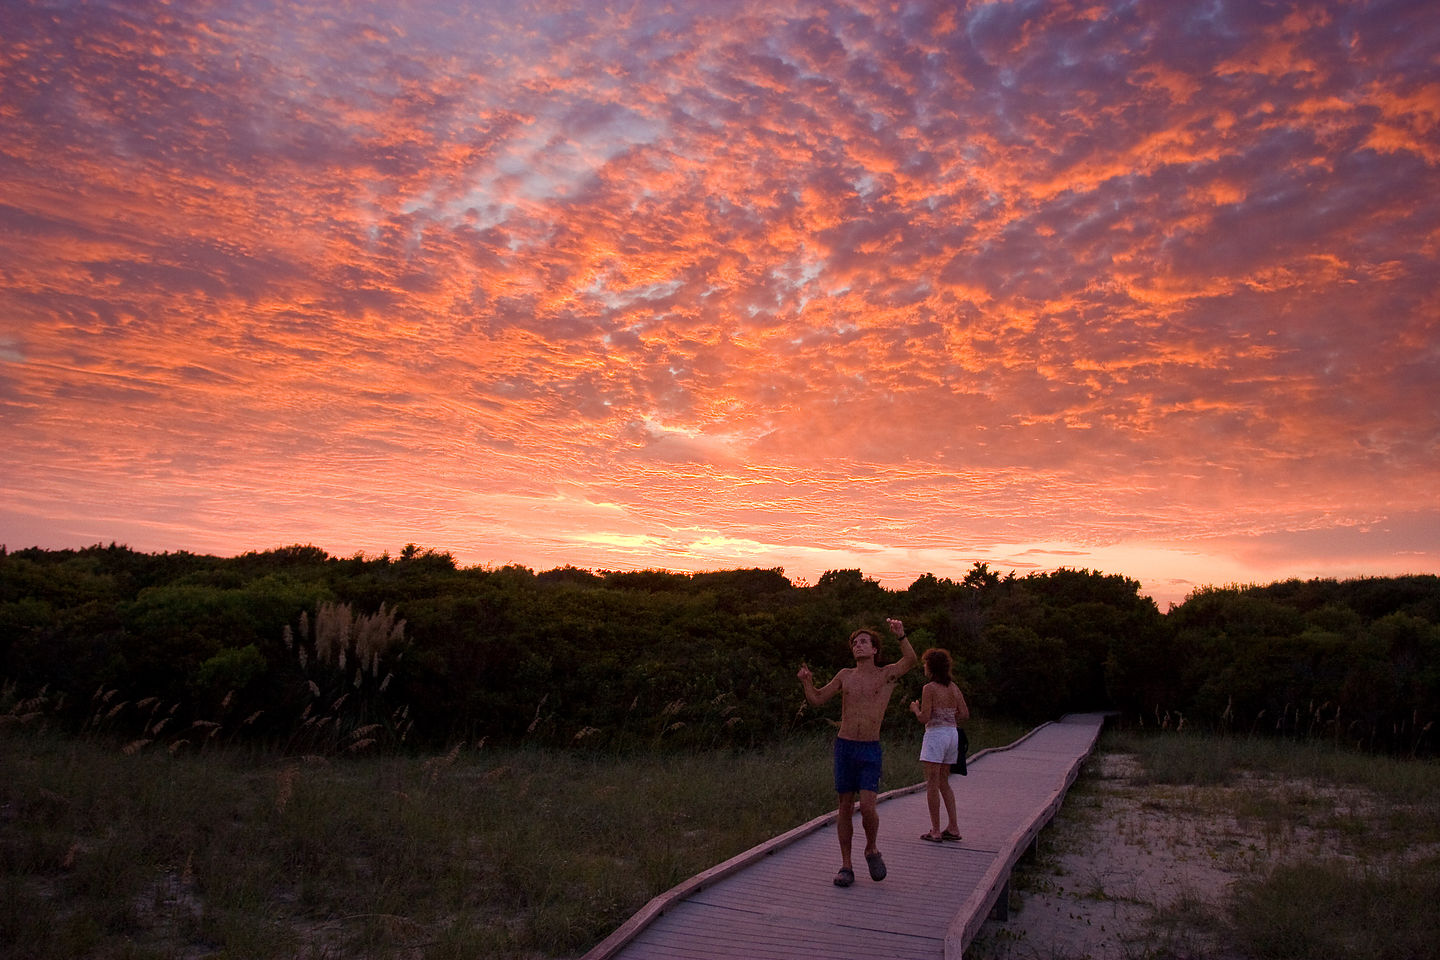 Andrew & Lolo enjoying sunset